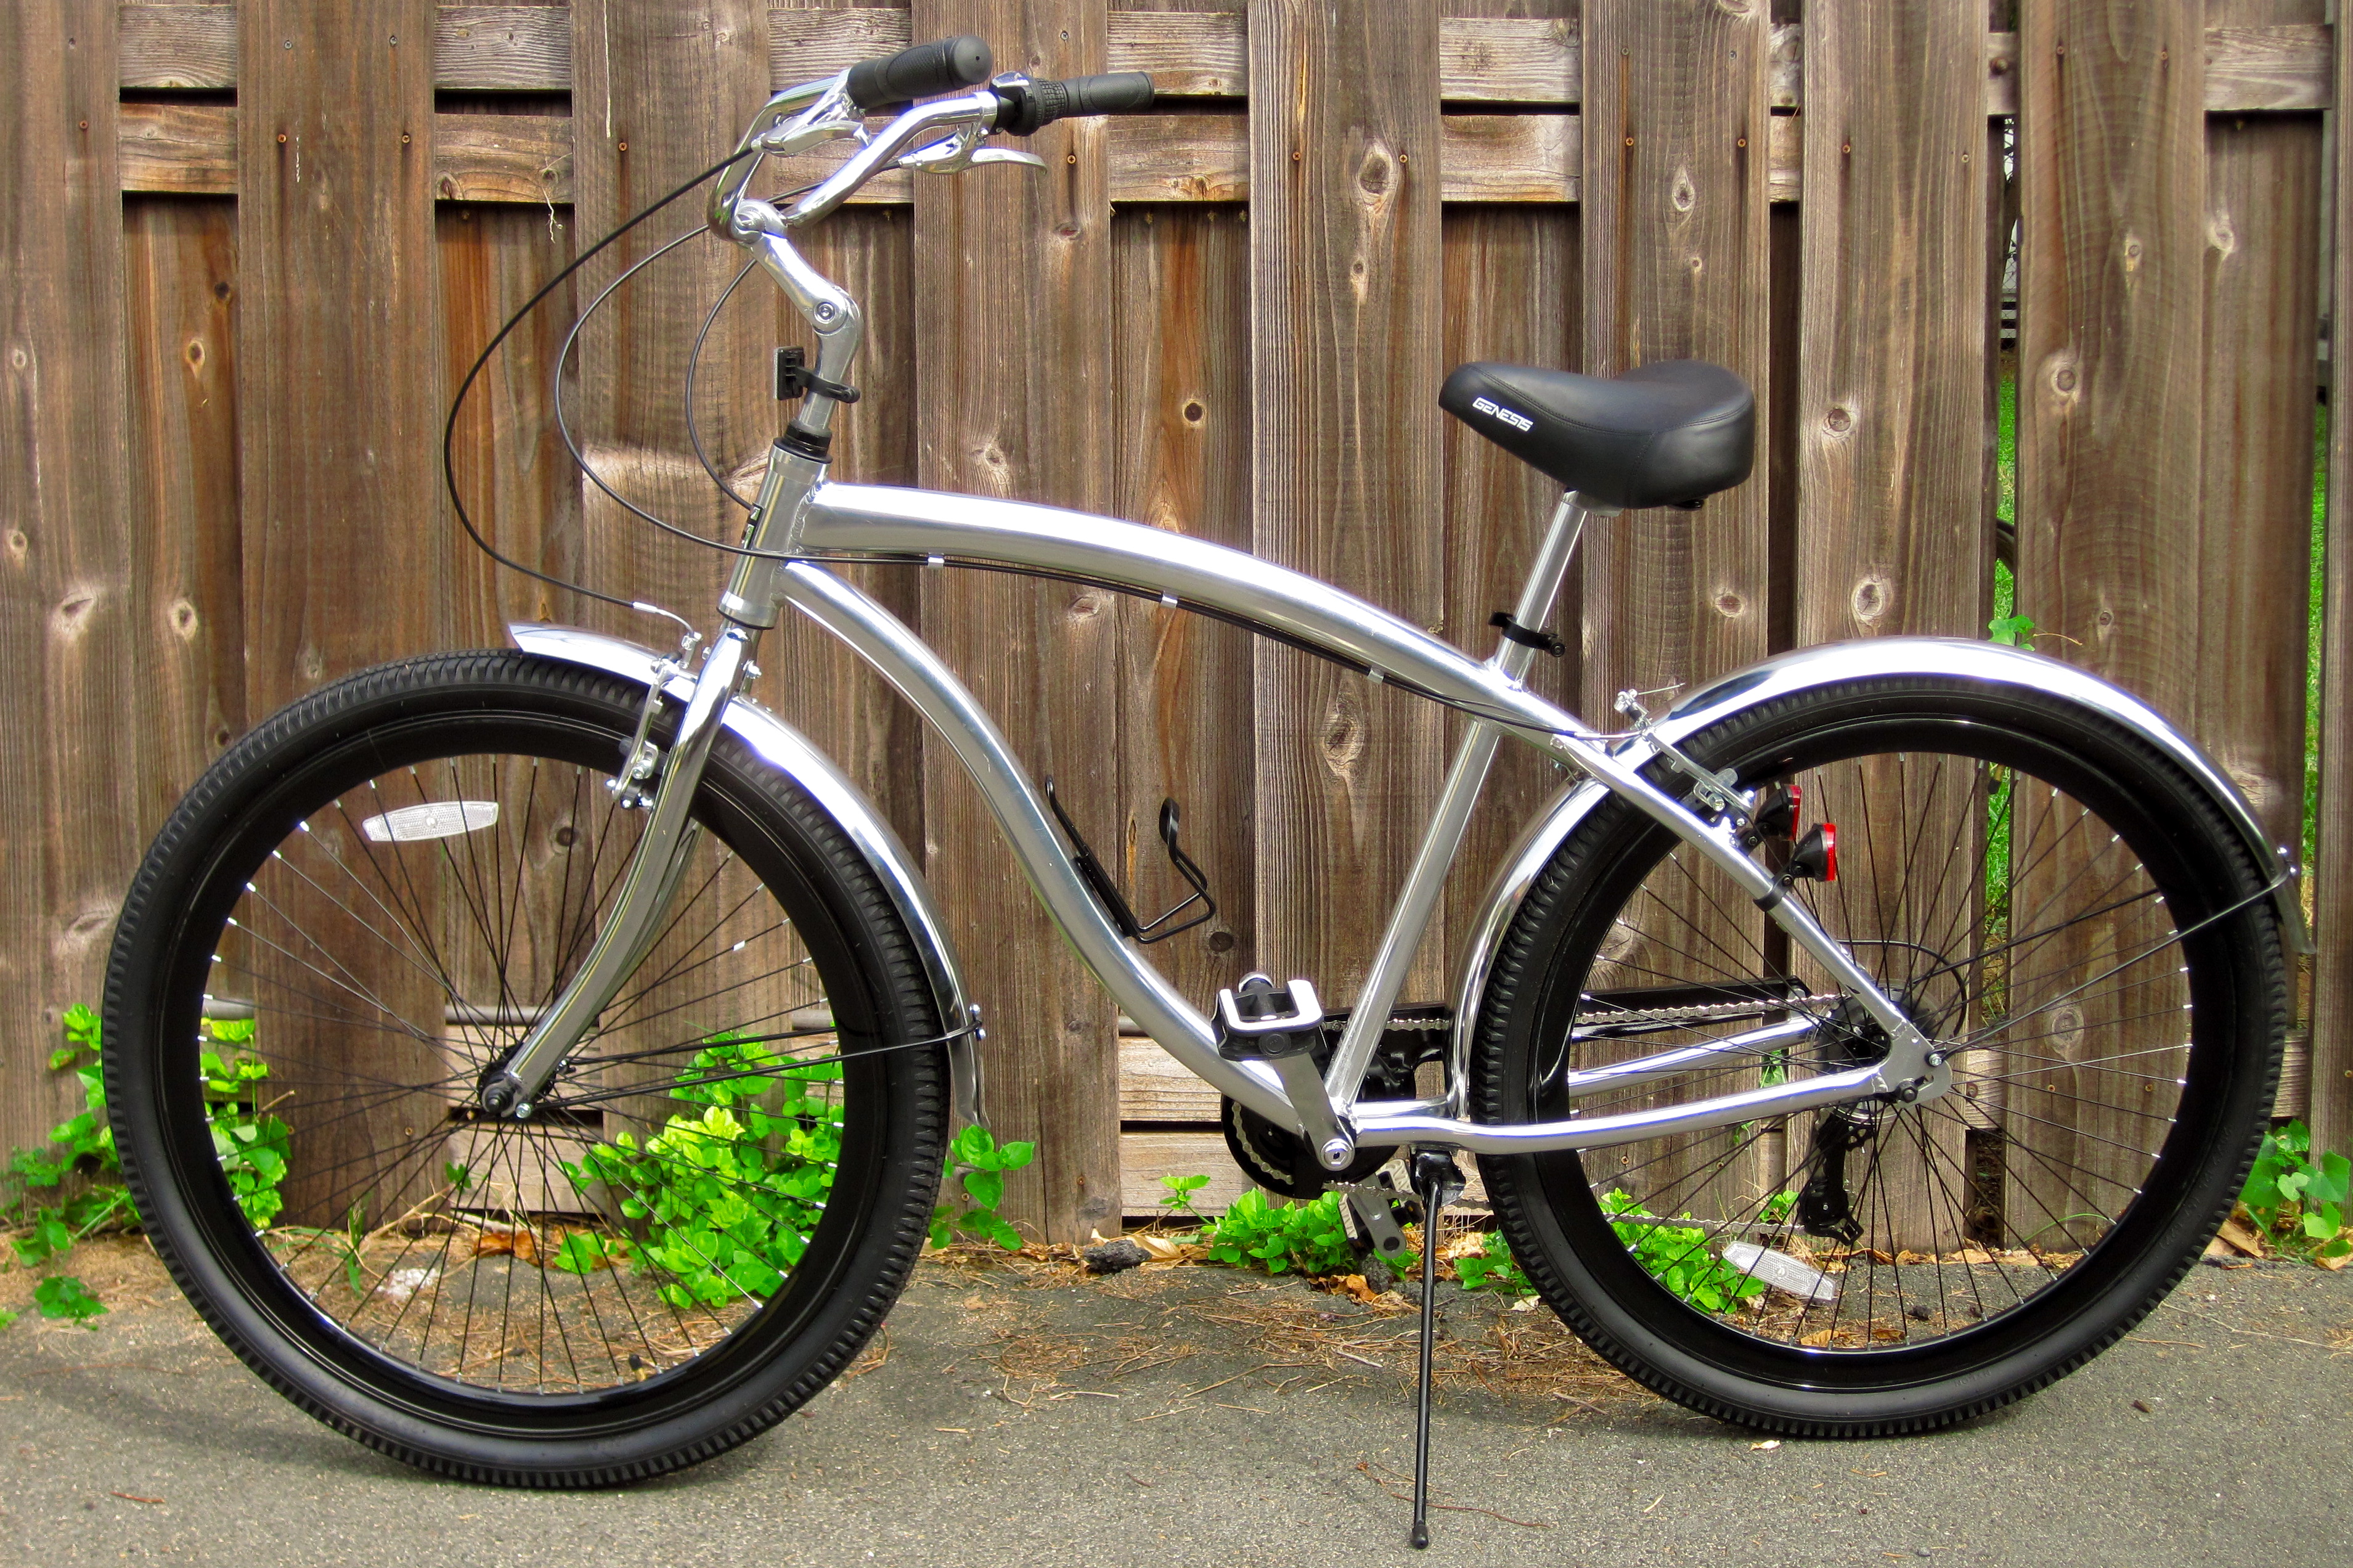 genesis 29 inch bicycle